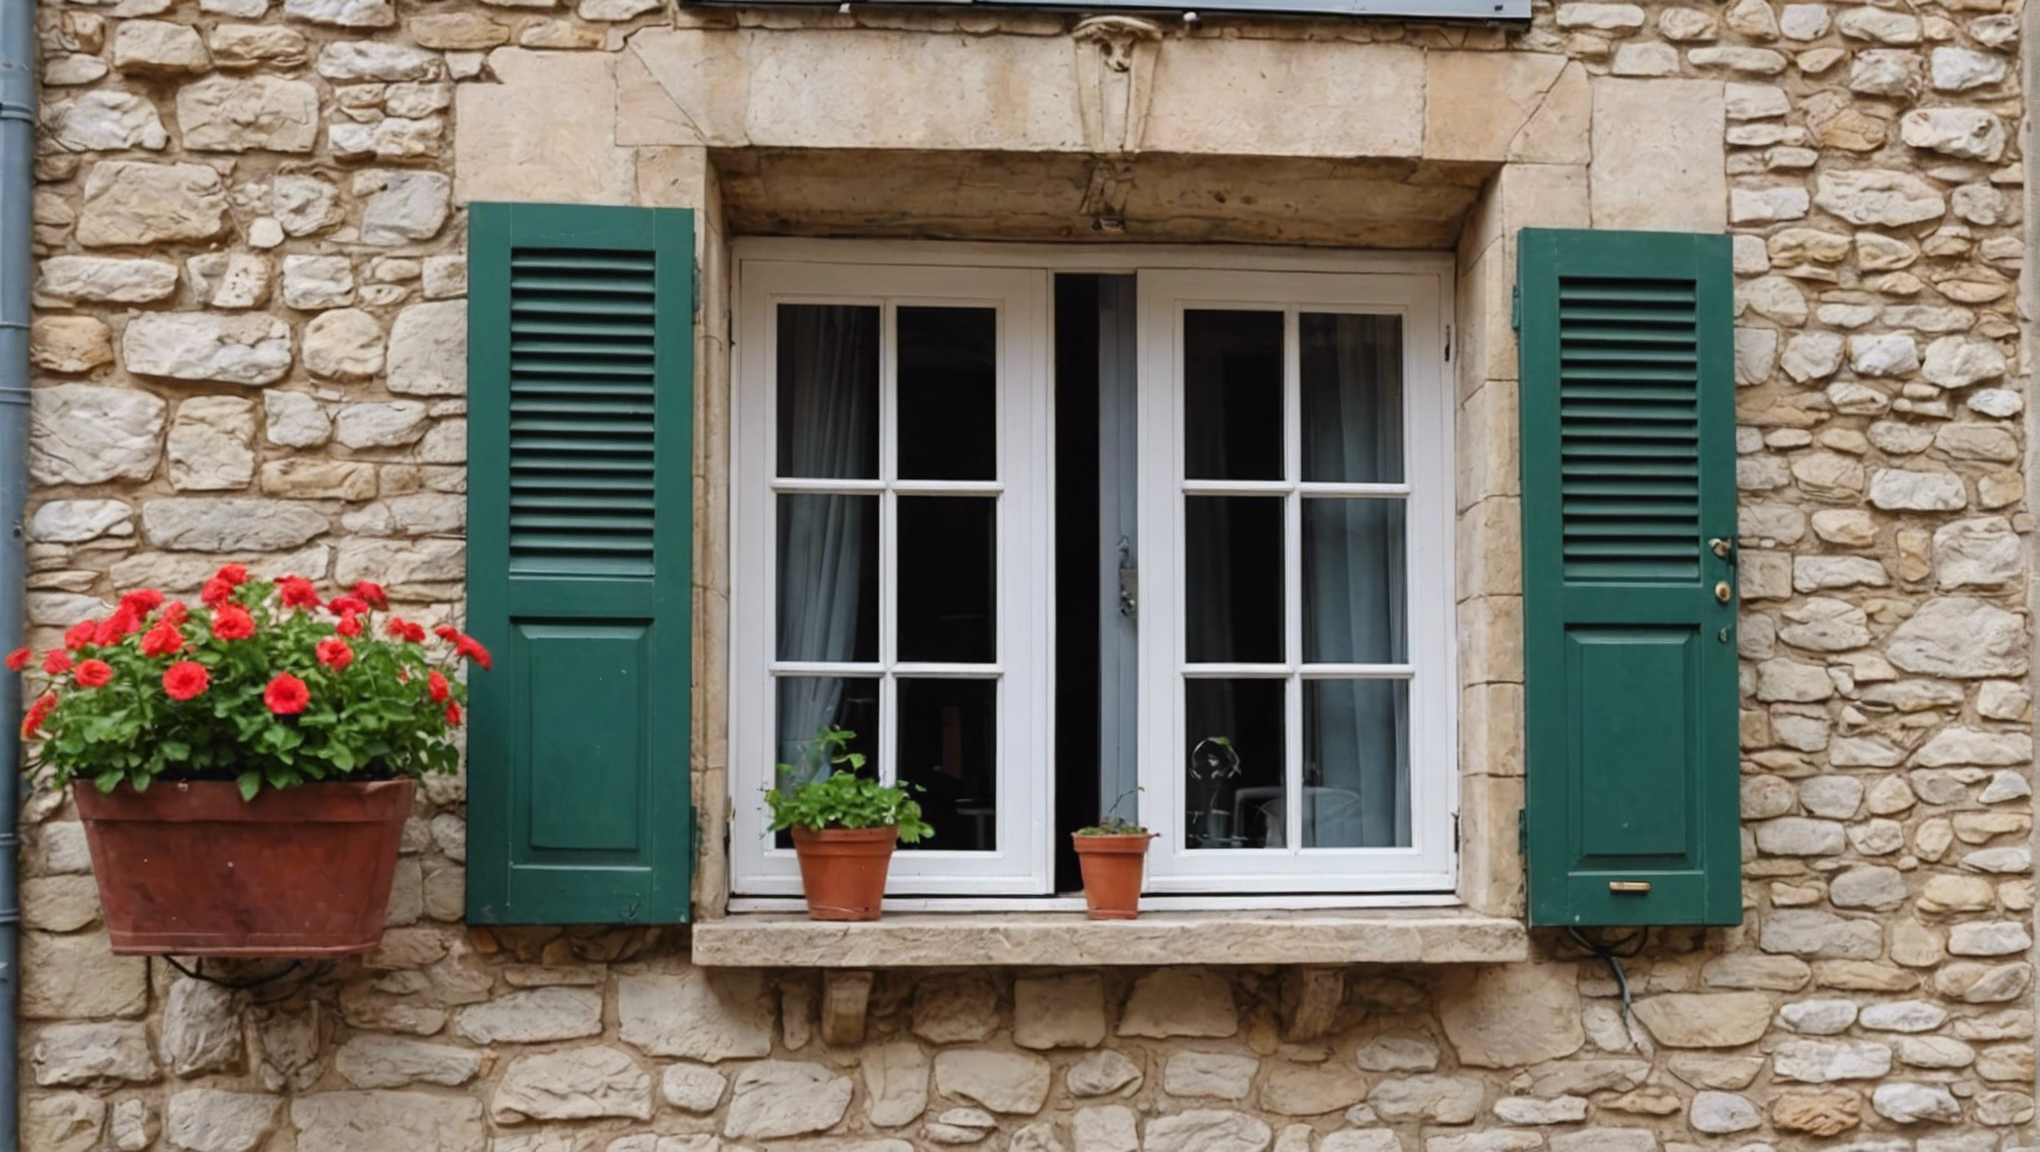 découvrez comment obtenir votre prime rénov pour le remplacement de vos fenêtres et réaliser des économies d'énergie grâce à l'aide de l'état.